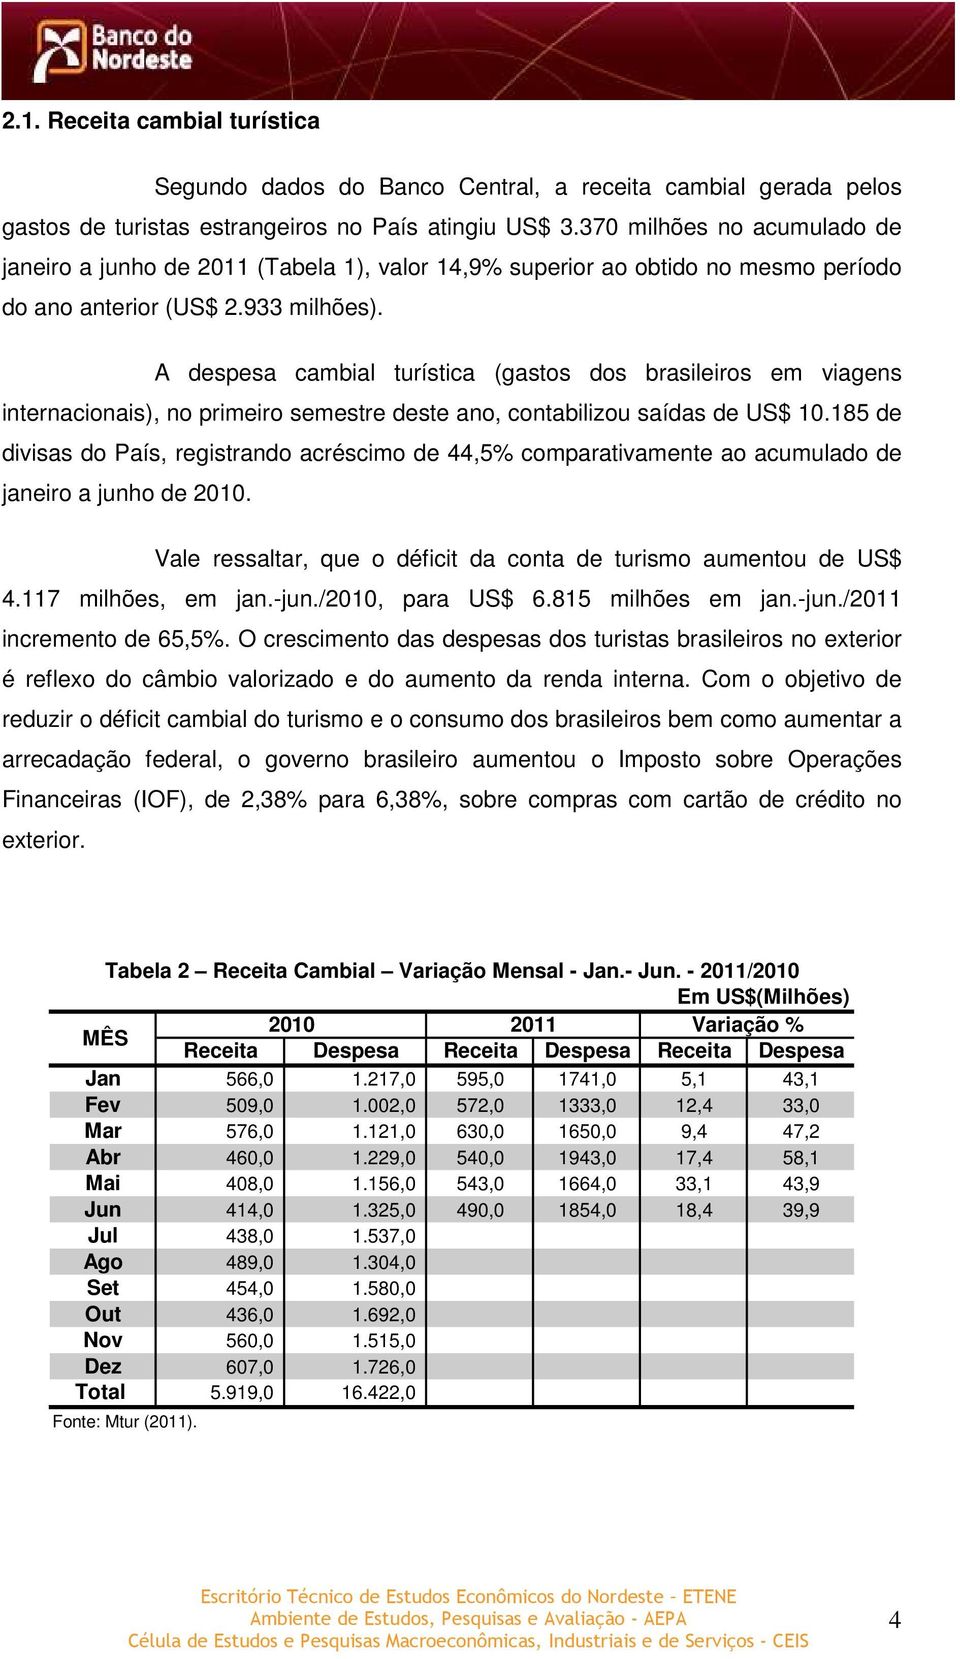 A despesa cambial turística (gastos dos brasileiros em viagens internacionais), no primeiro semestre deste ano, contabilizou saídas de US$ 10.